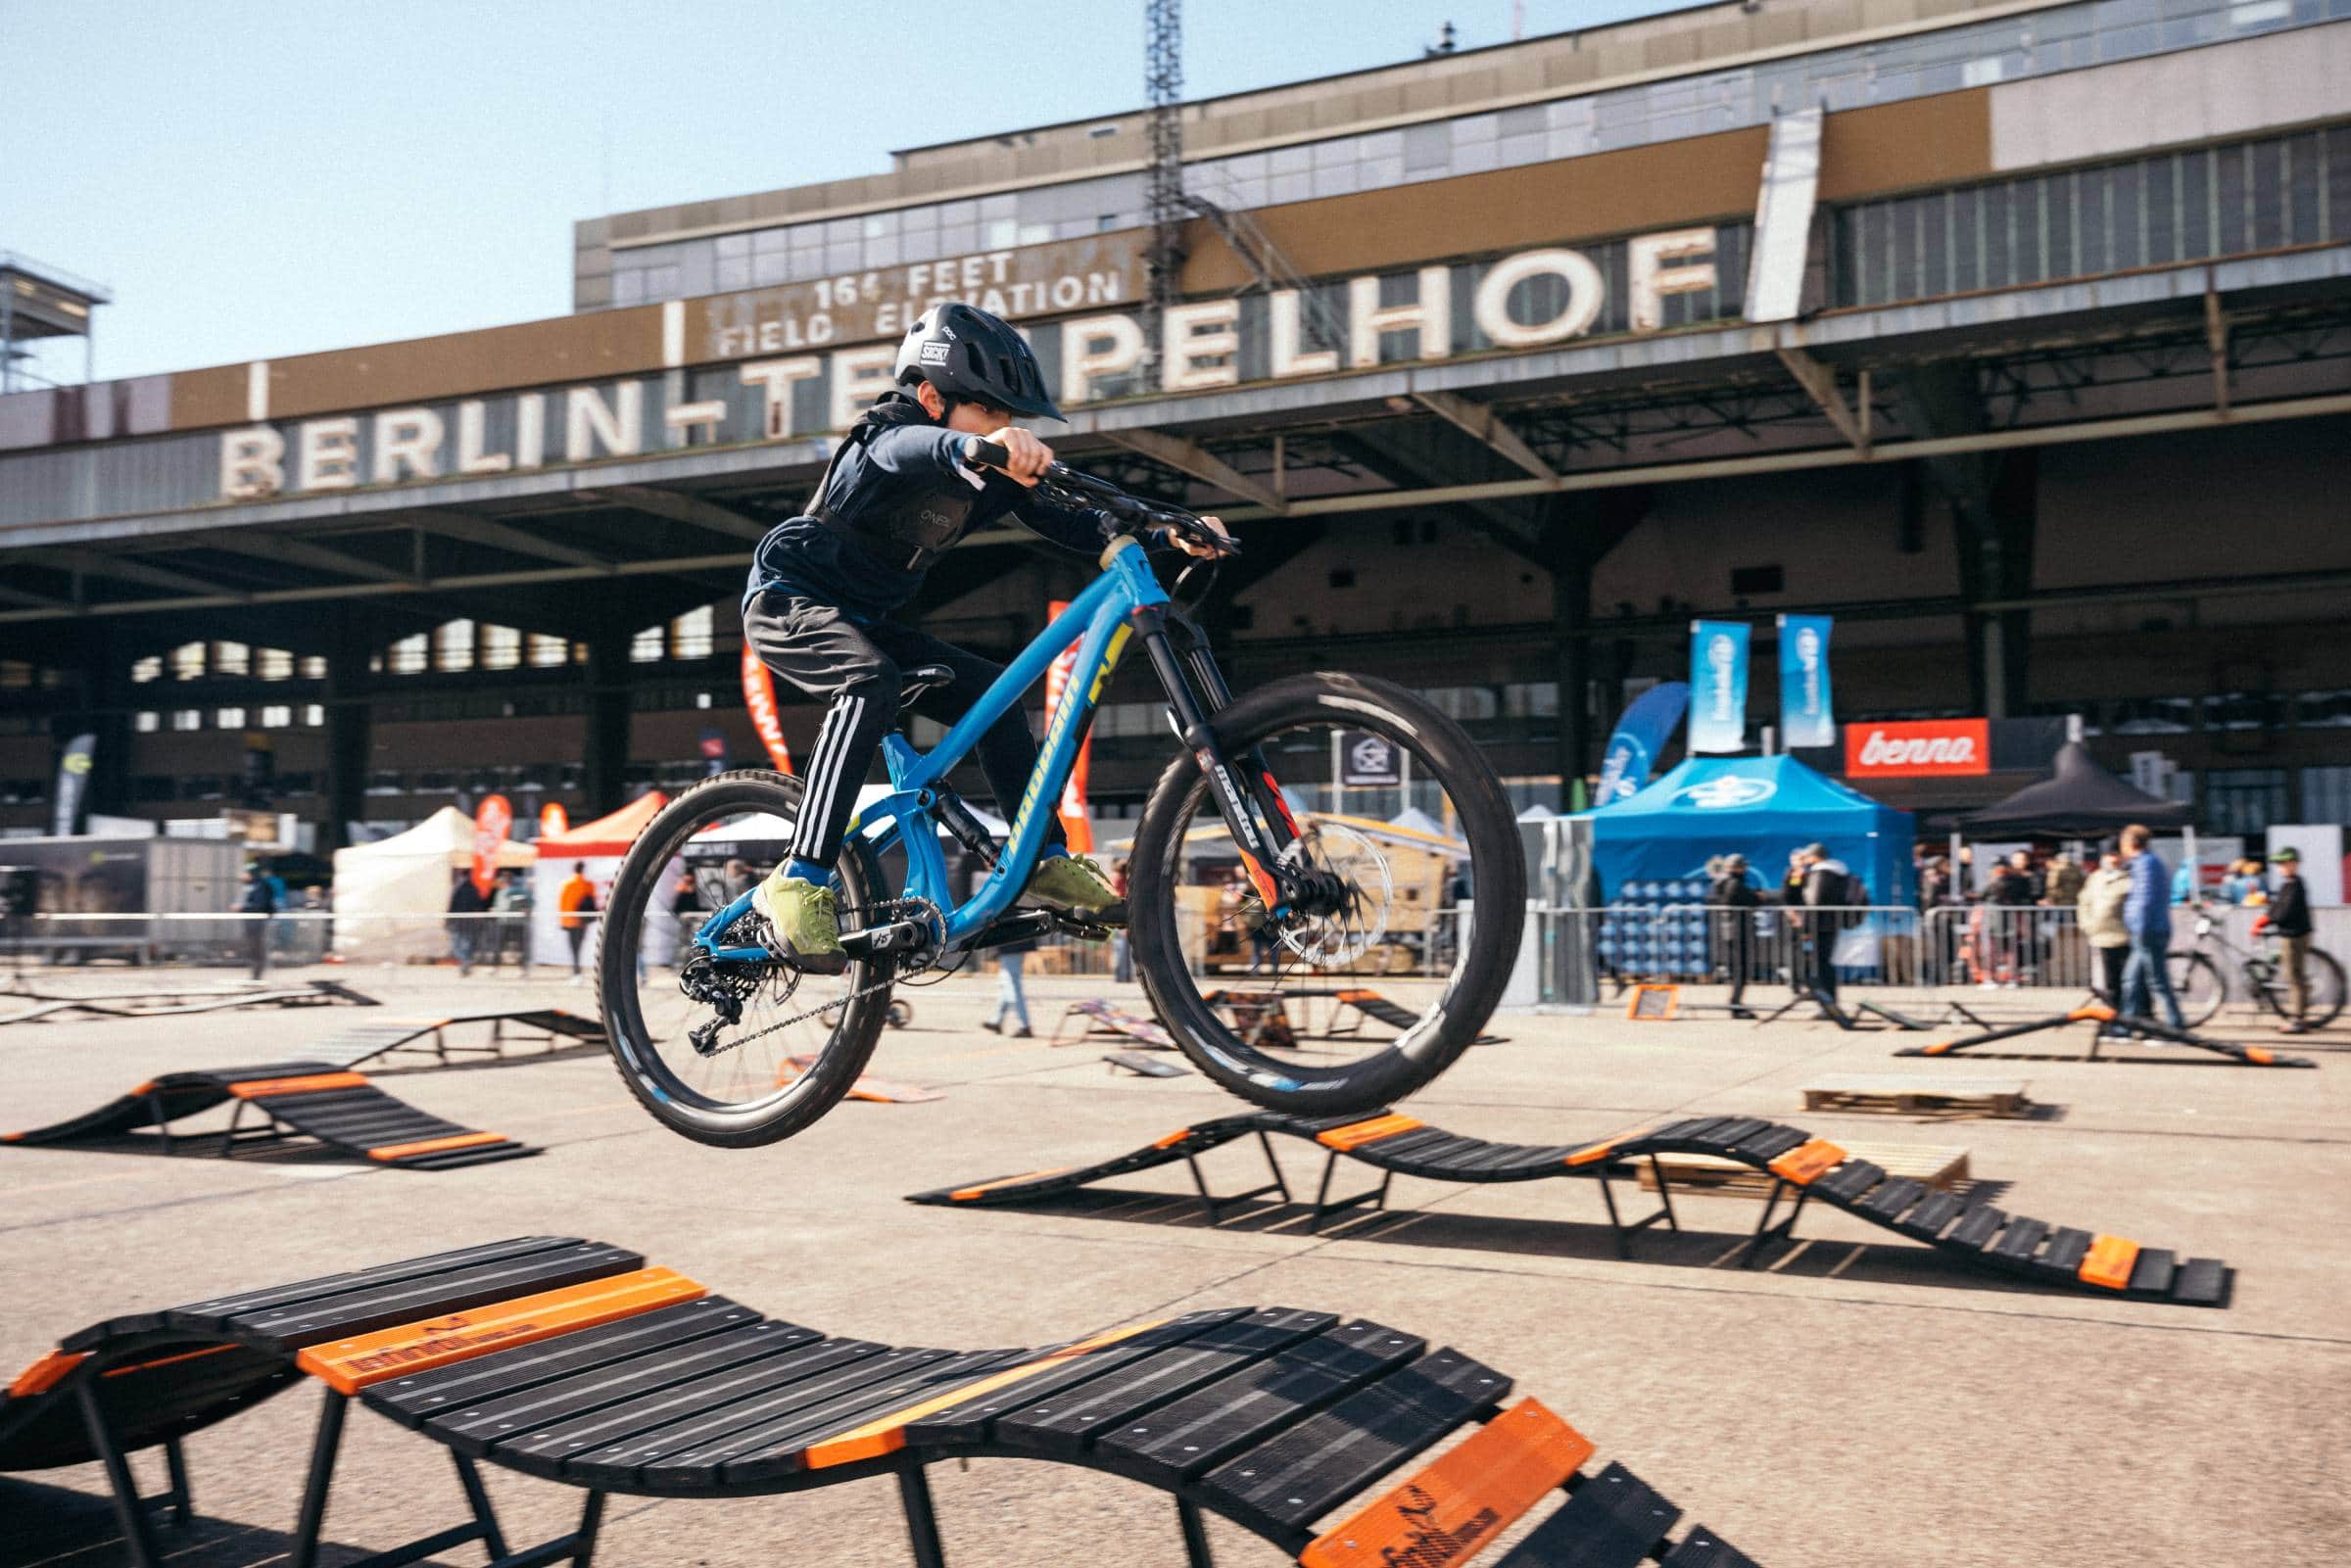 Tipps Für Das Erste Maiwochenende: Veloberlin, Fahrradfestival Im Flughafen Tempelhof // Himbeer